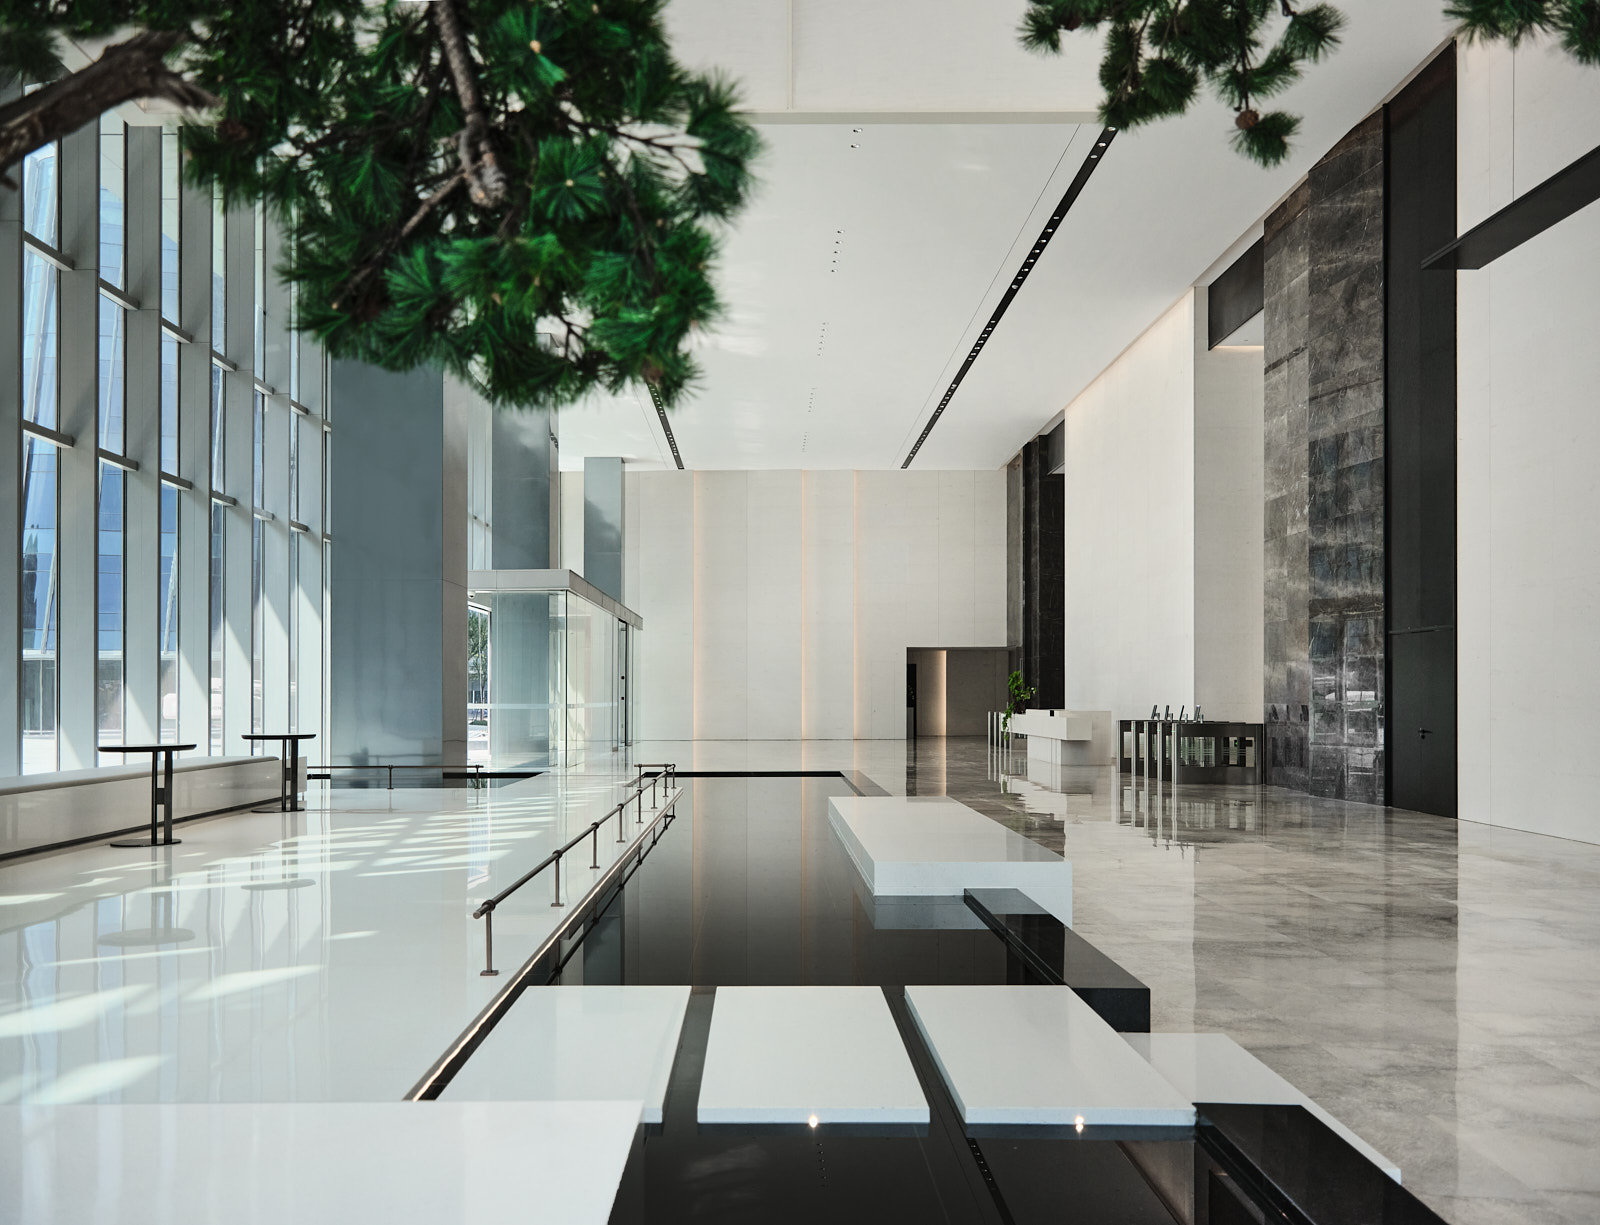 辦公室設計,辦公樓大堂設計,辦公室樣板間設計,現代風格辦公室設計,辦公室設計案例,上海力波中心,上海,於強室內設計師事務所,於強,YuQiang&Partners